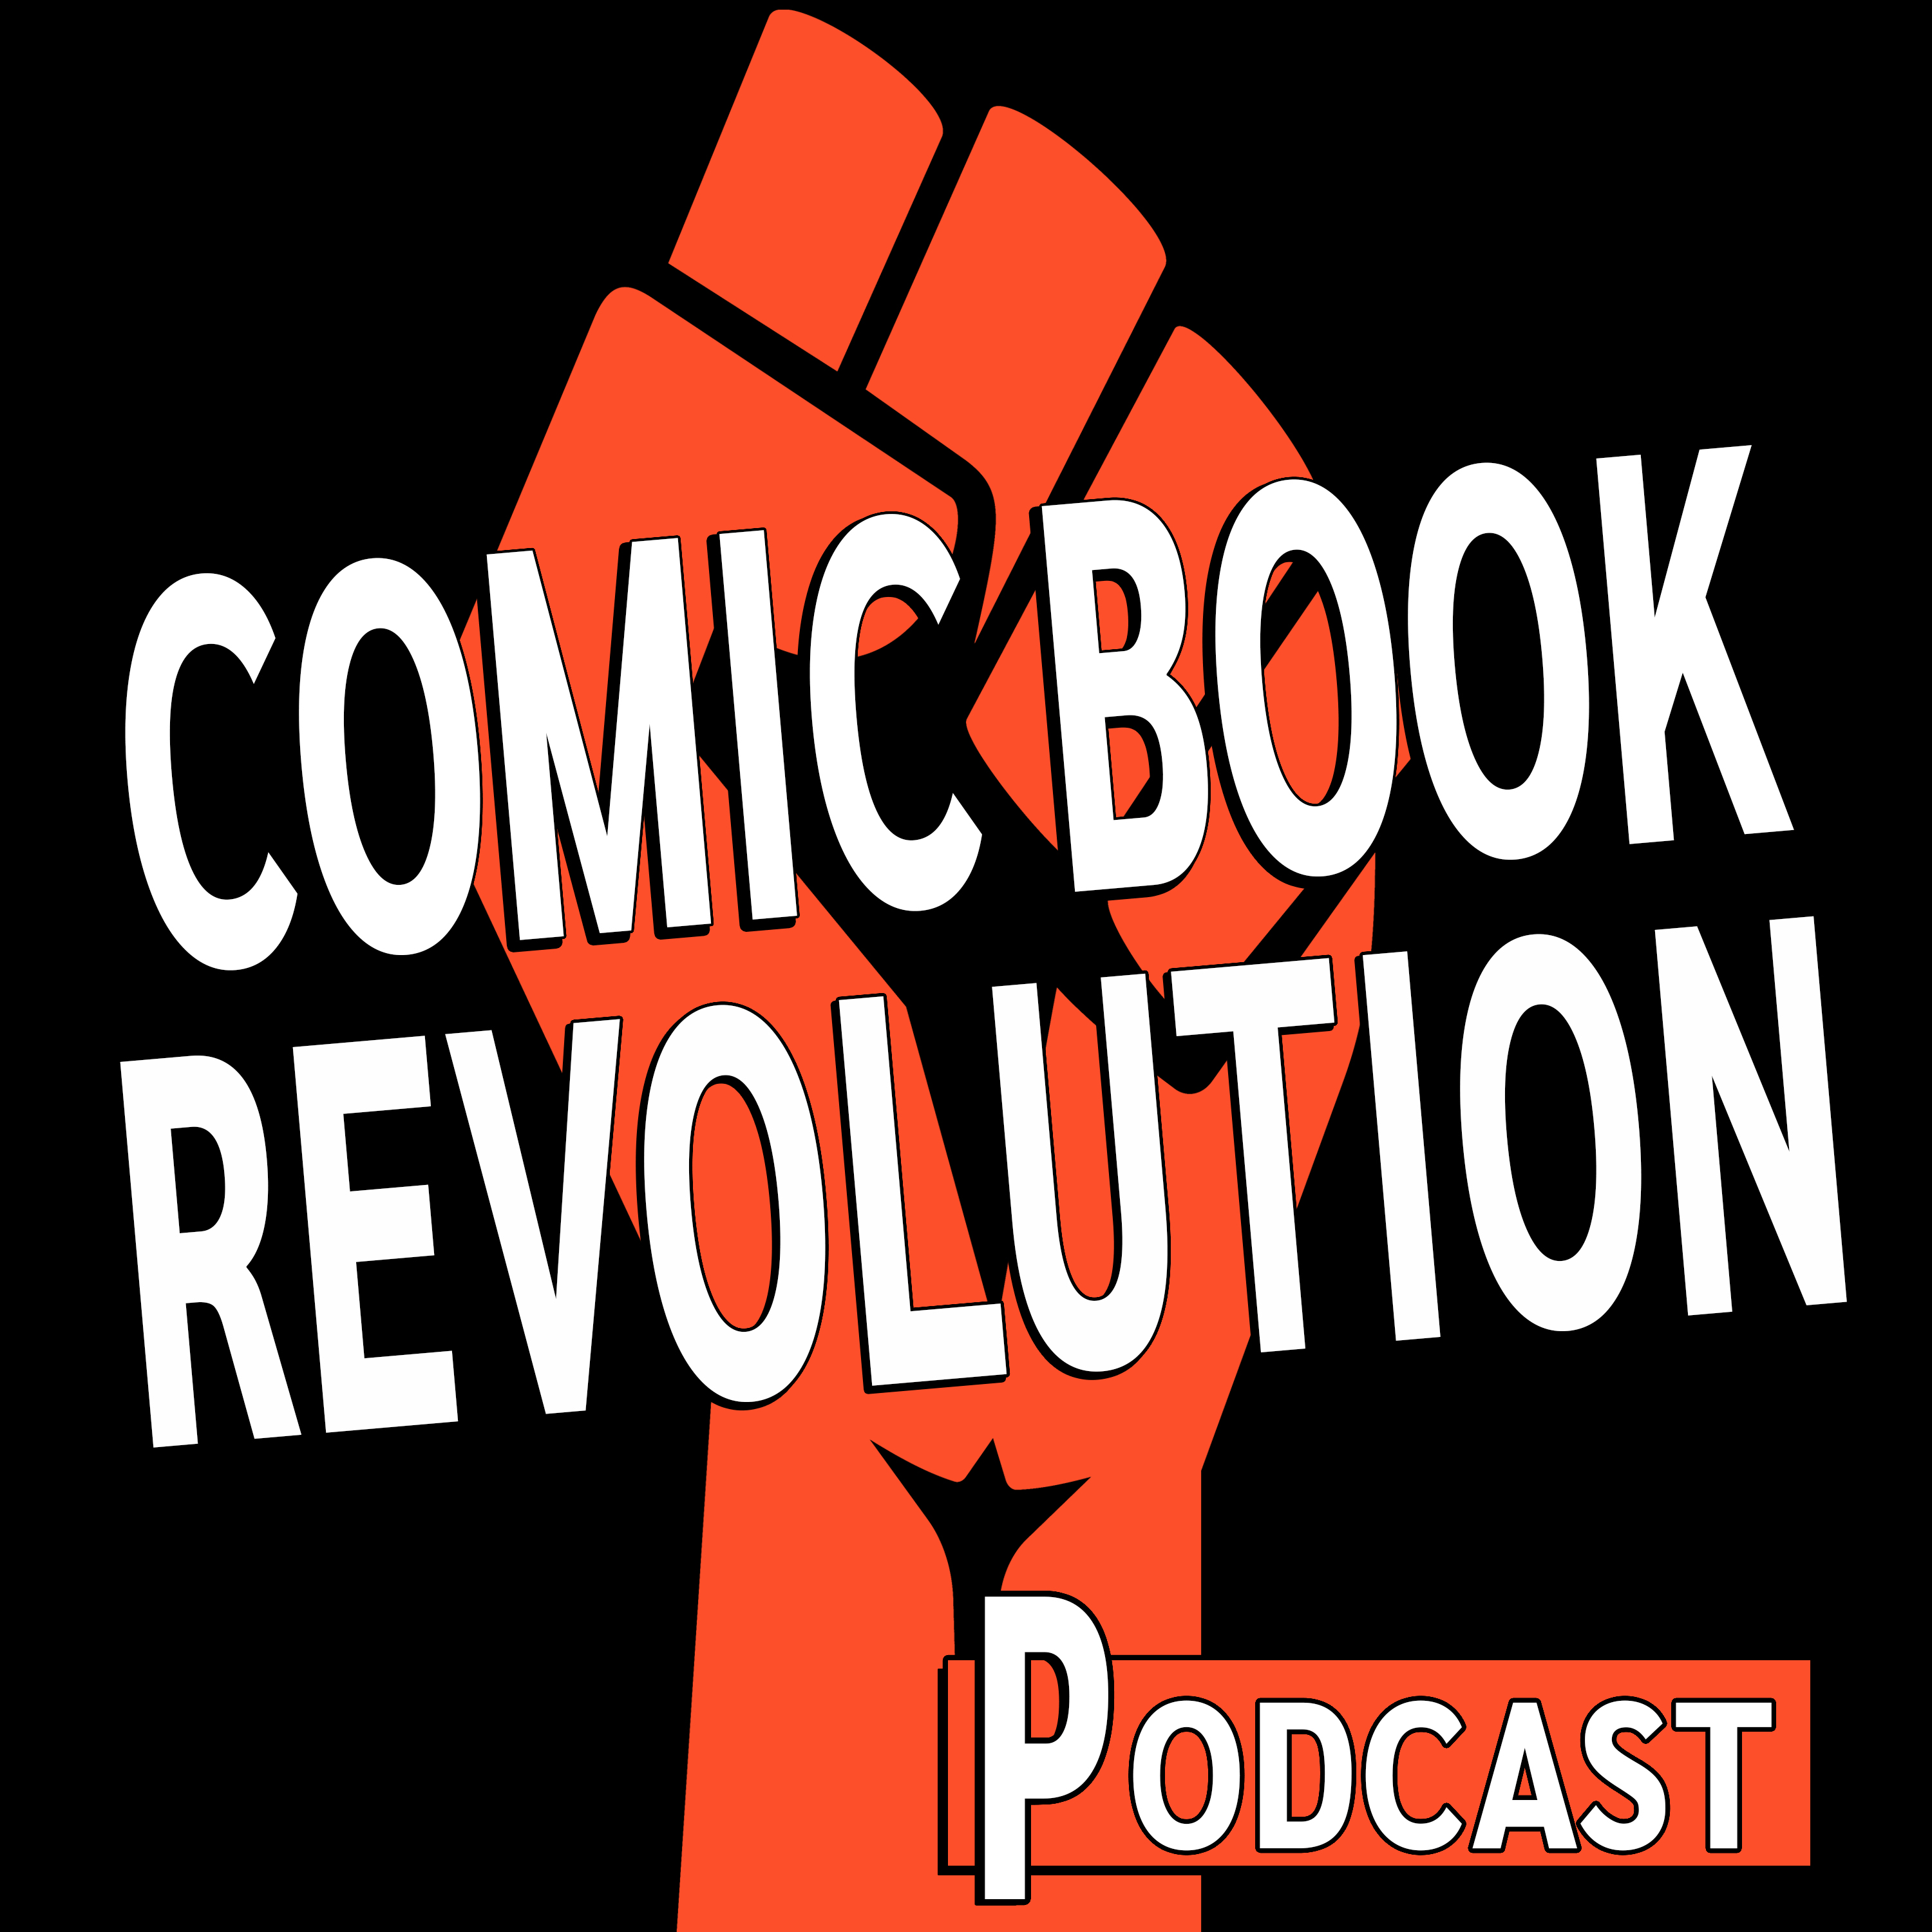 Comic Book Revolution Podcast Episode 01